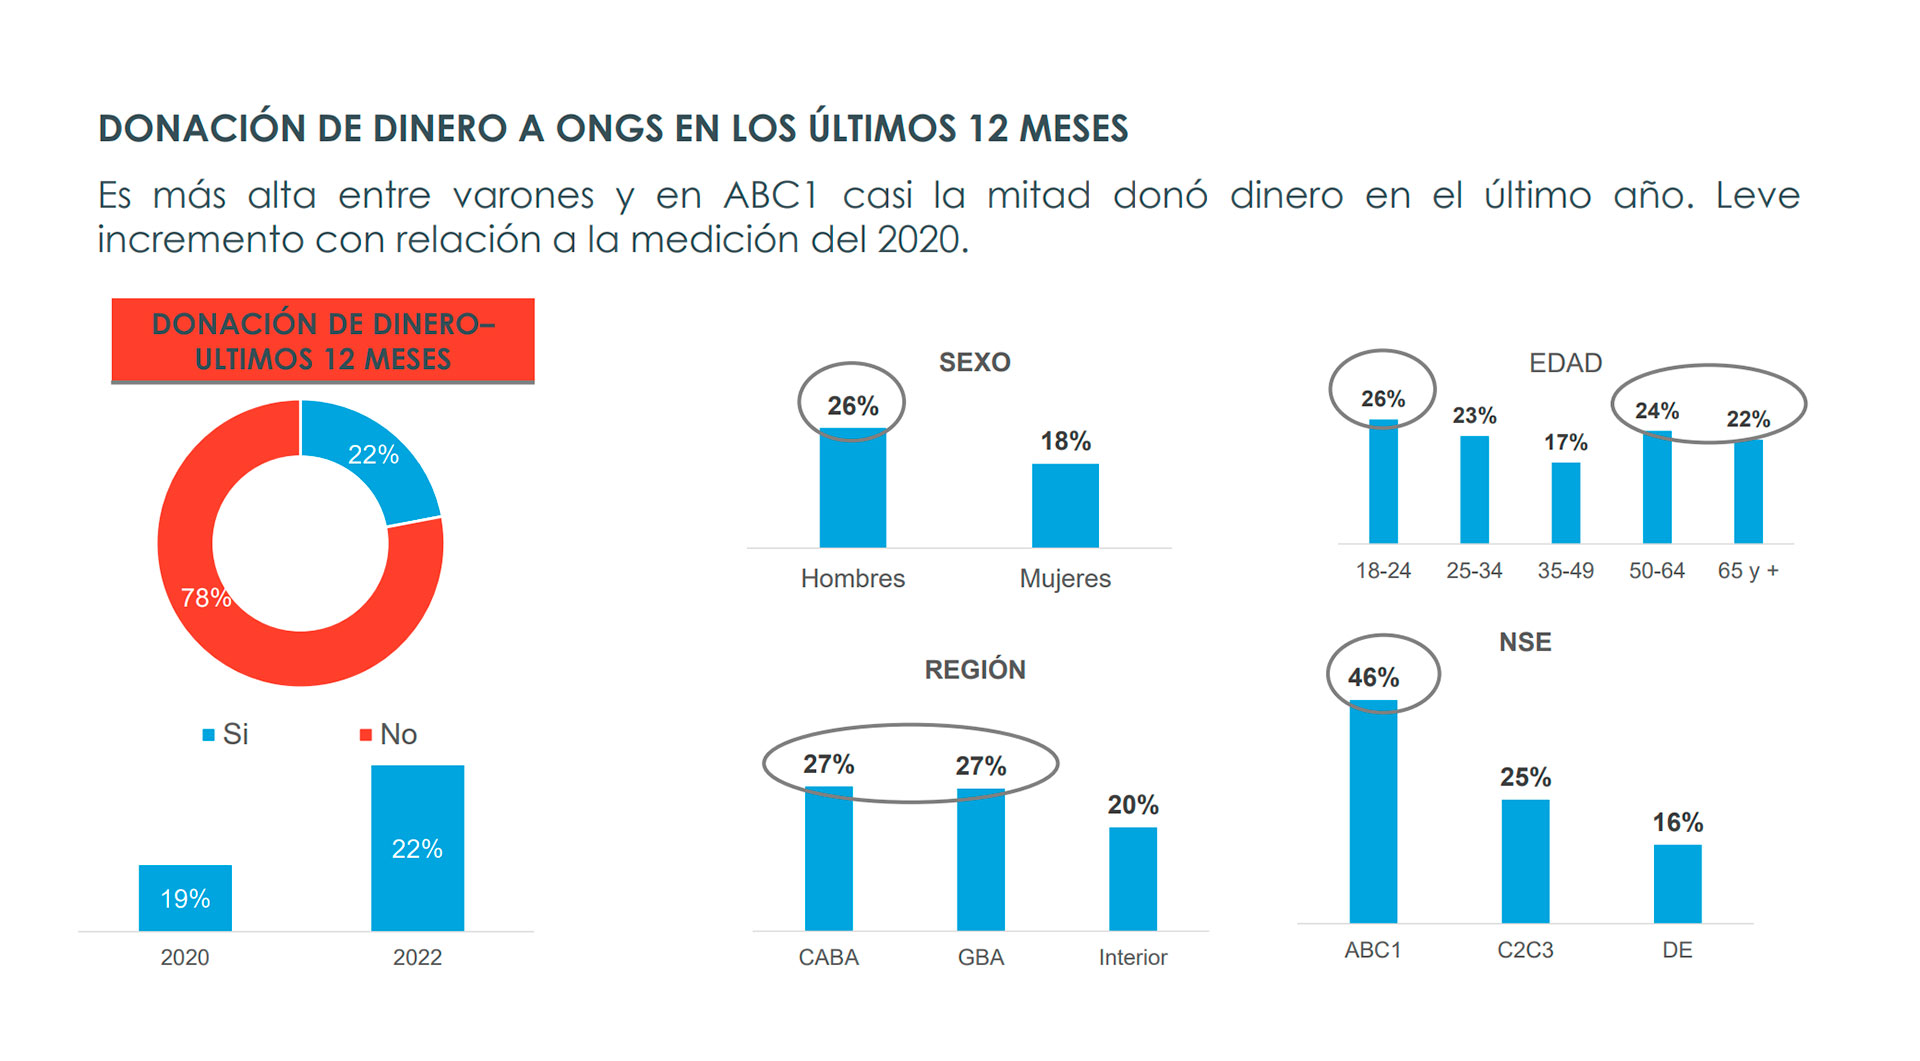 El informe fue elaborado por el Centro de Innovación Social de la Universidad de San Andrés, la agencia Qendar y la consultora Voices!